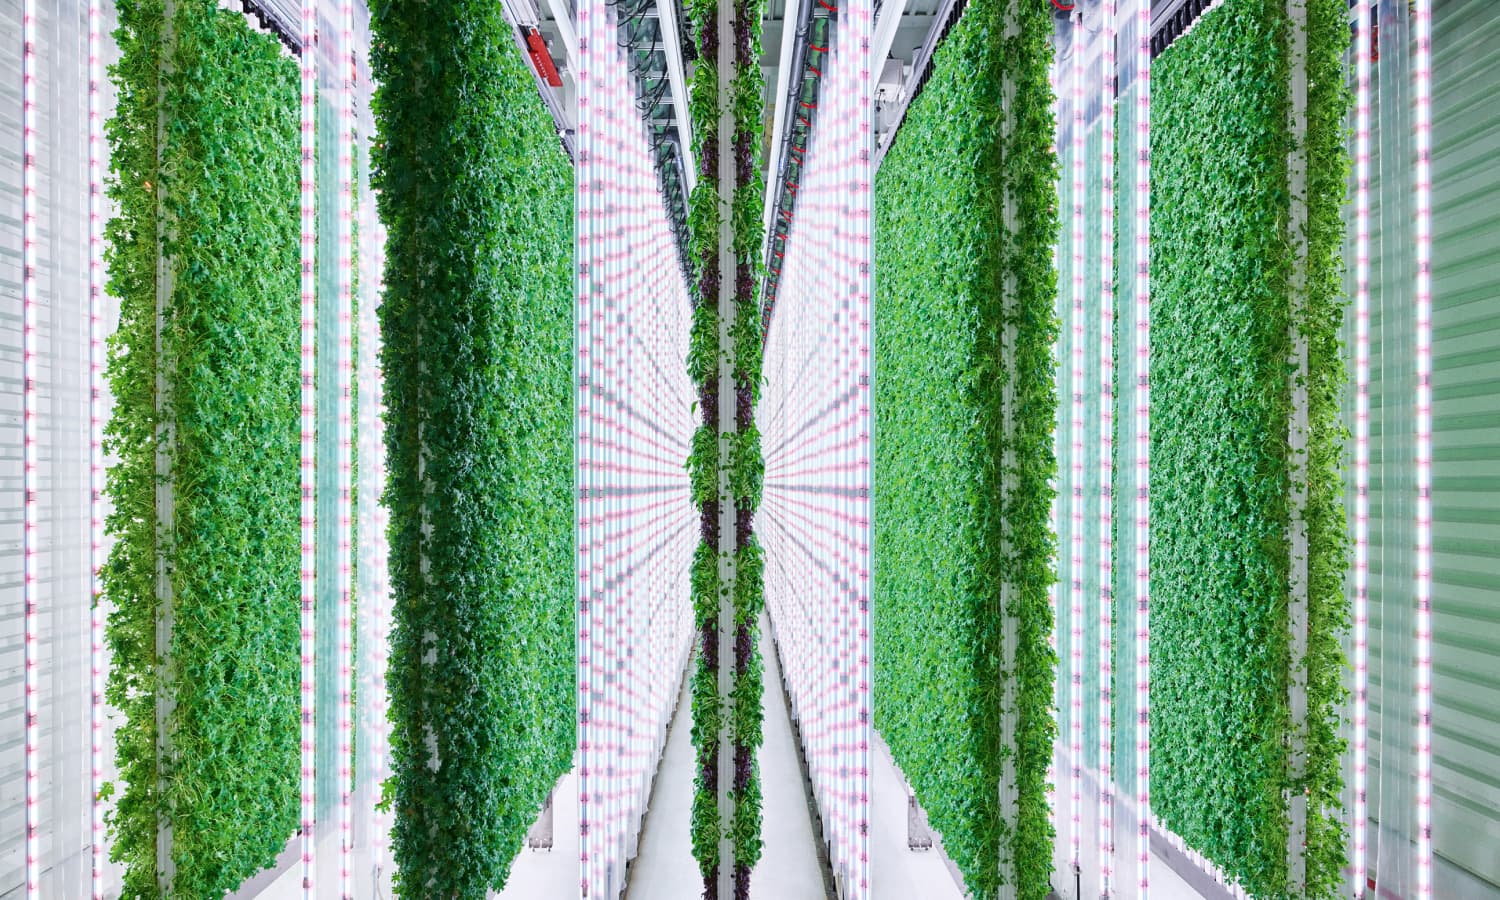 Plenty indoor vertical farm